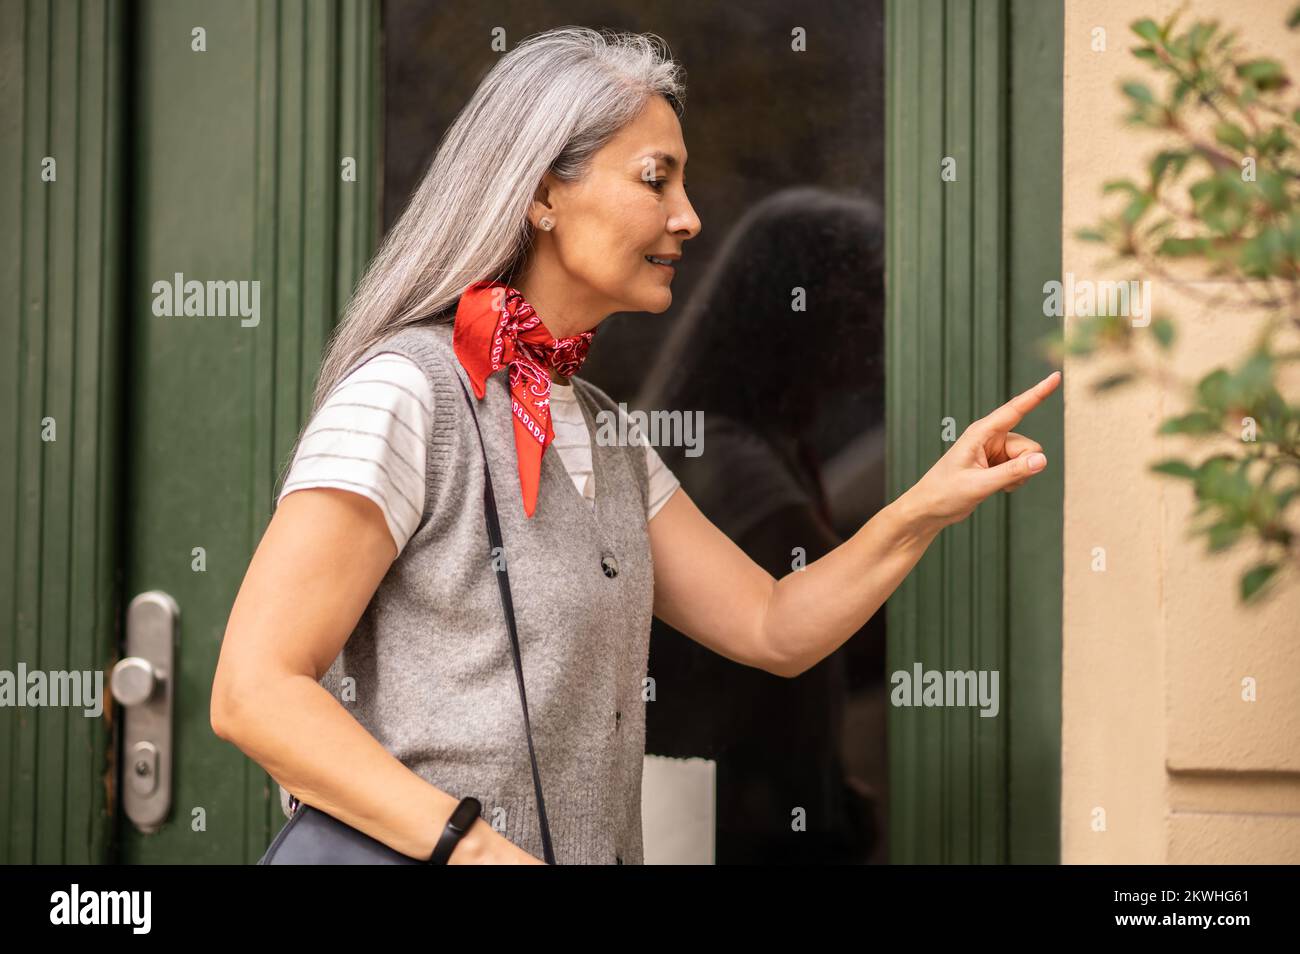 Femme debout à l'entrée de la maison et pressérant le code d'accès Banque D'Images